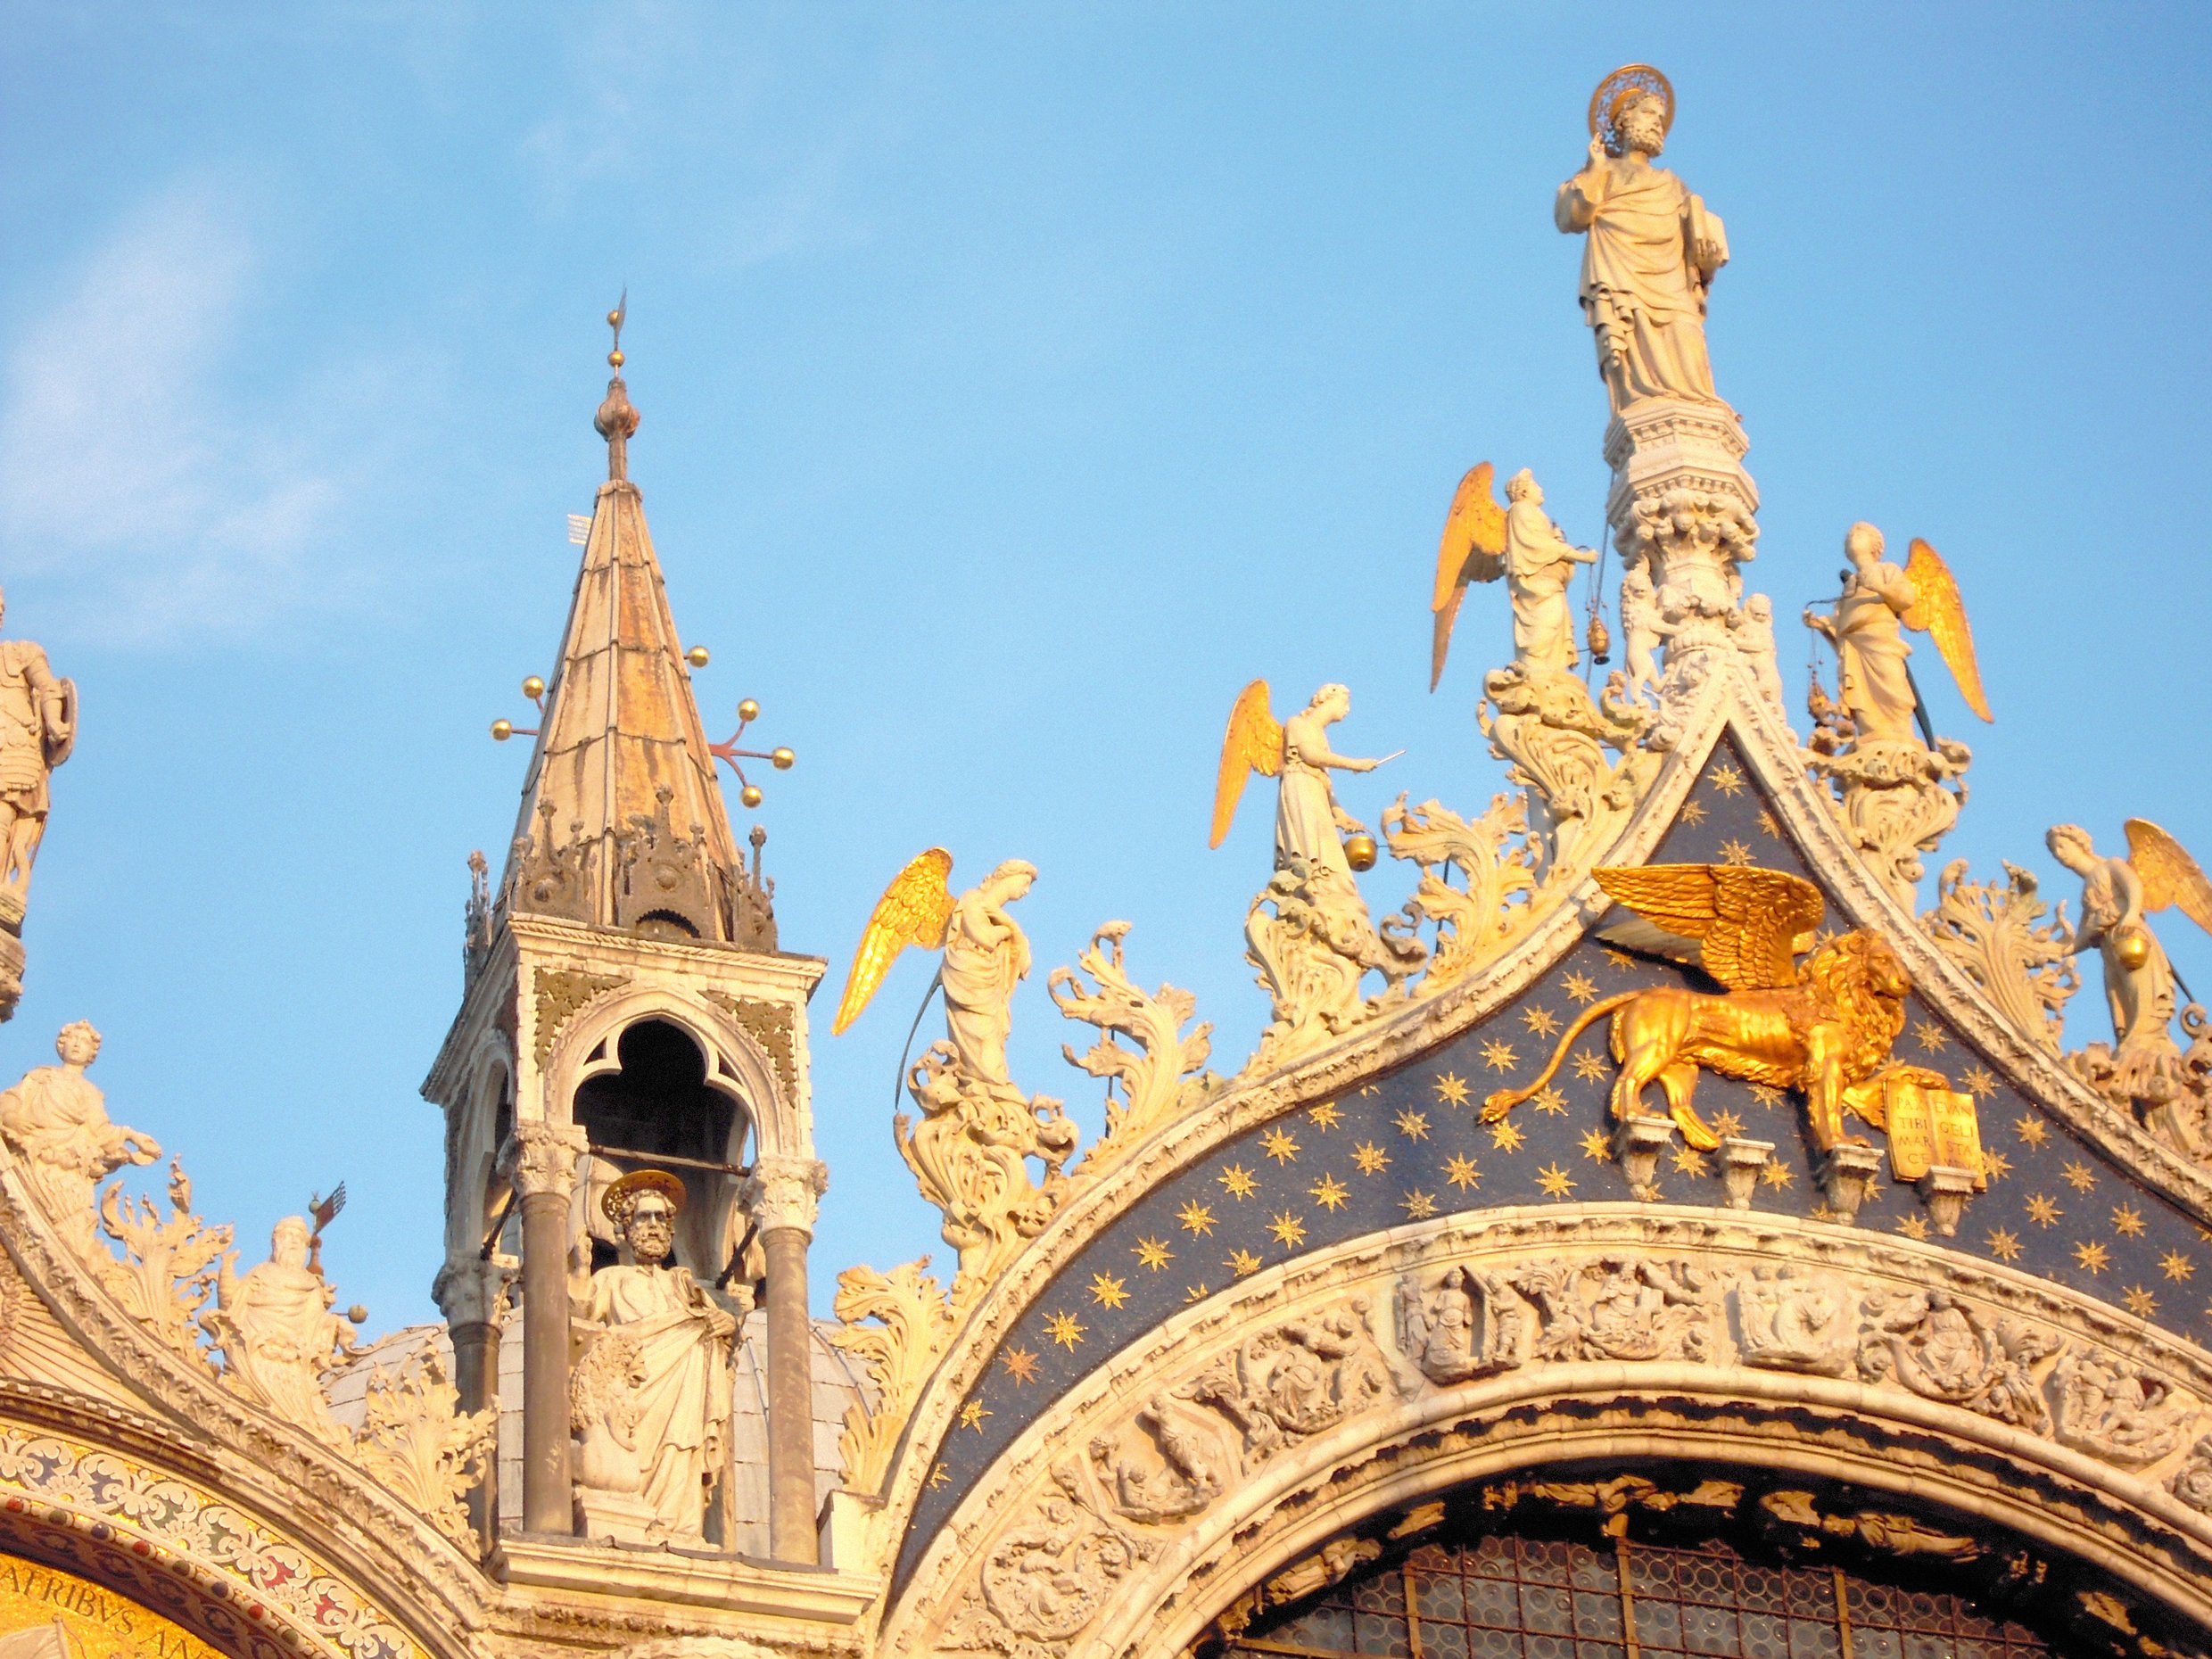 Отреставрированная скульптура крылатого льва Святого Марка и синяя мозаика с золотыми звездами на фасаде базилики Святого Марка в Венеции